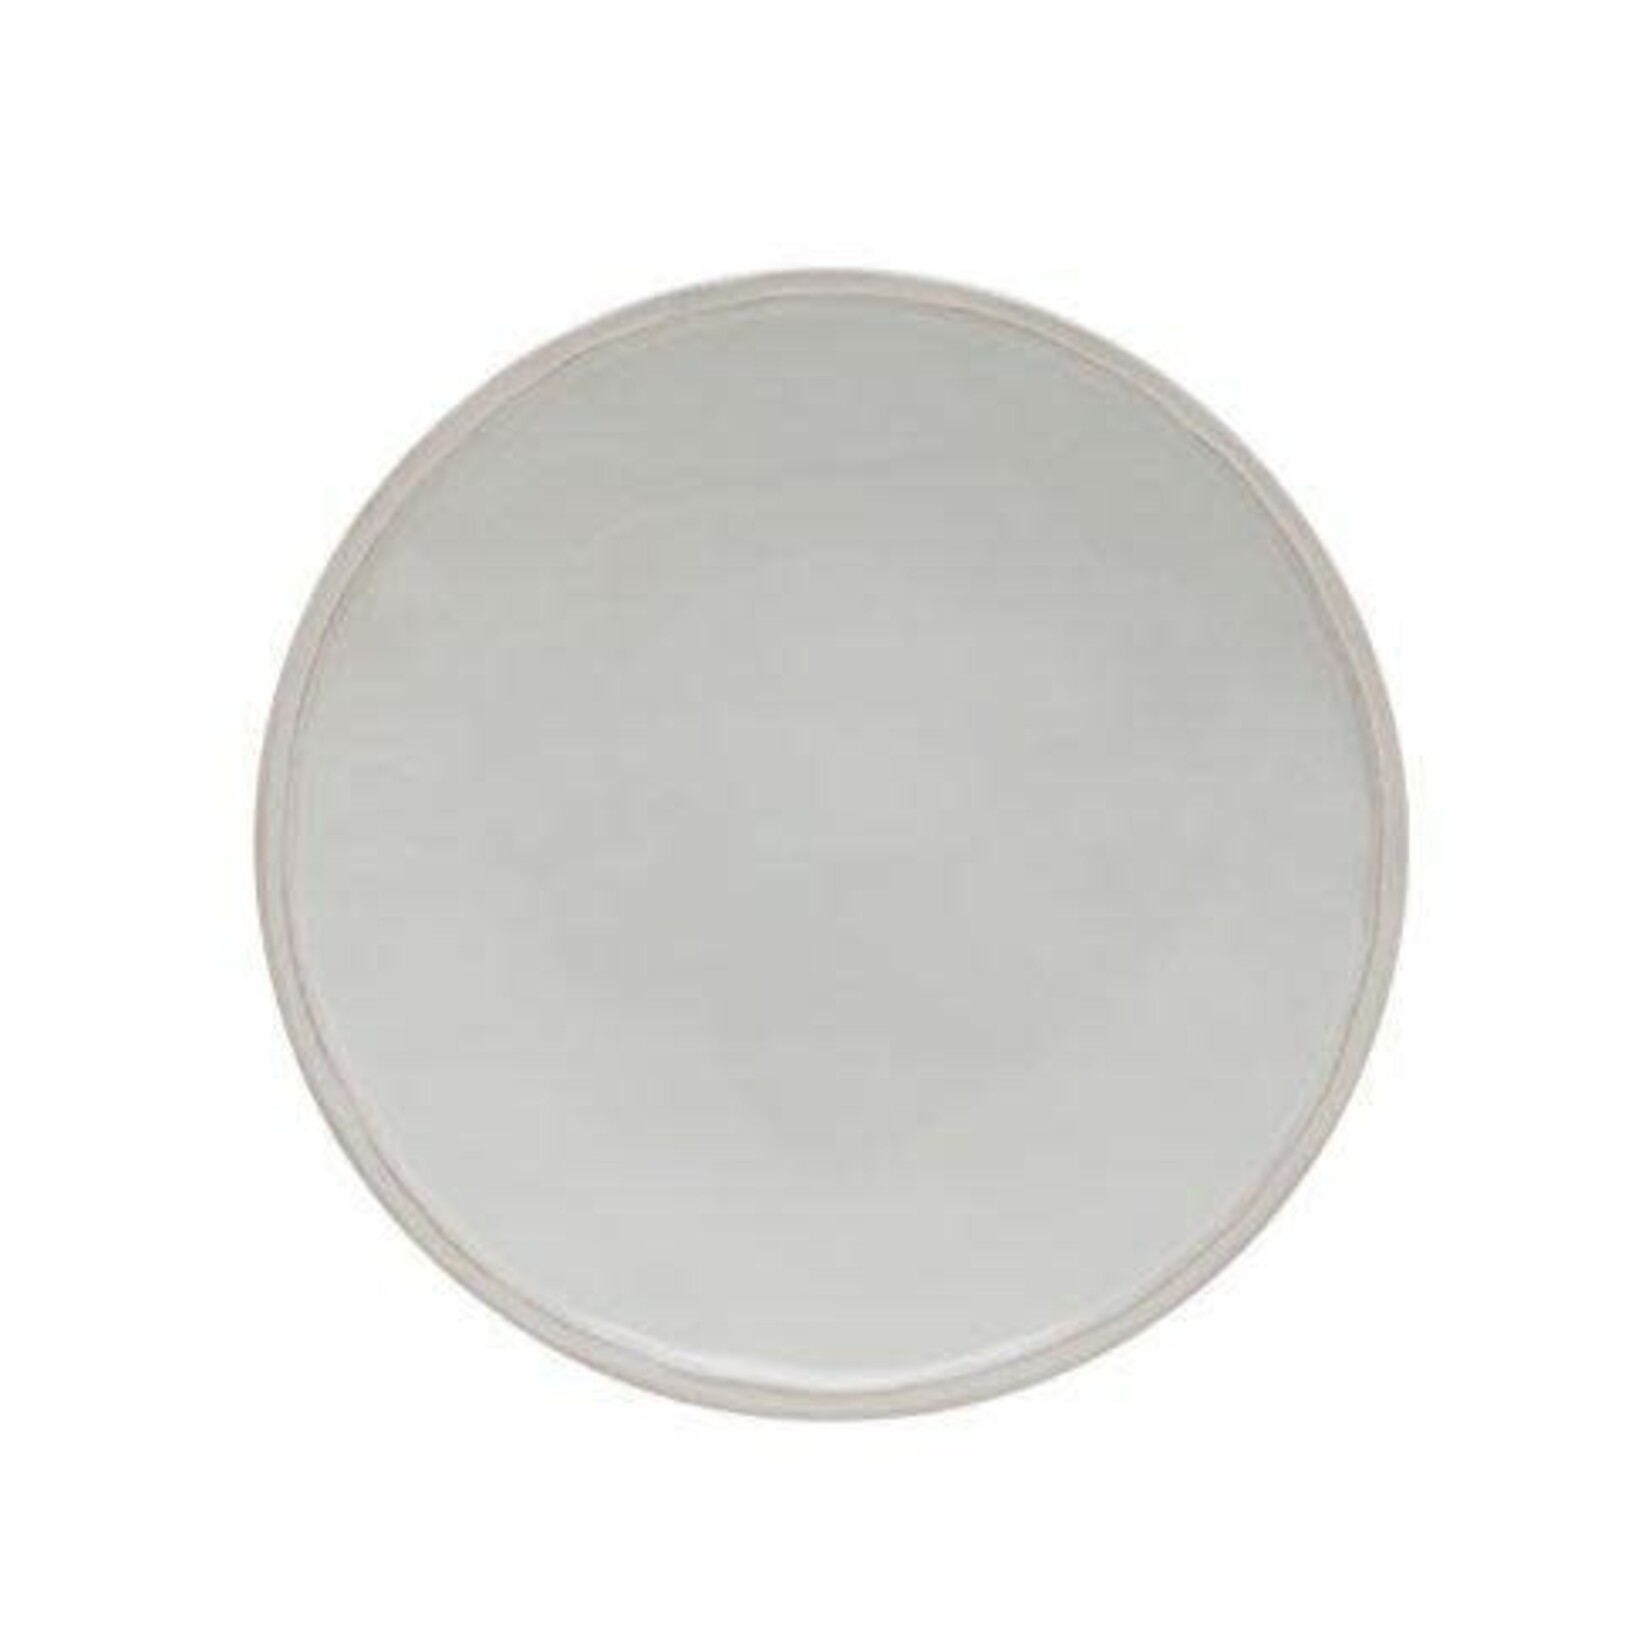 CASAFINA LIVING Fontana Dinner Plate 11", White